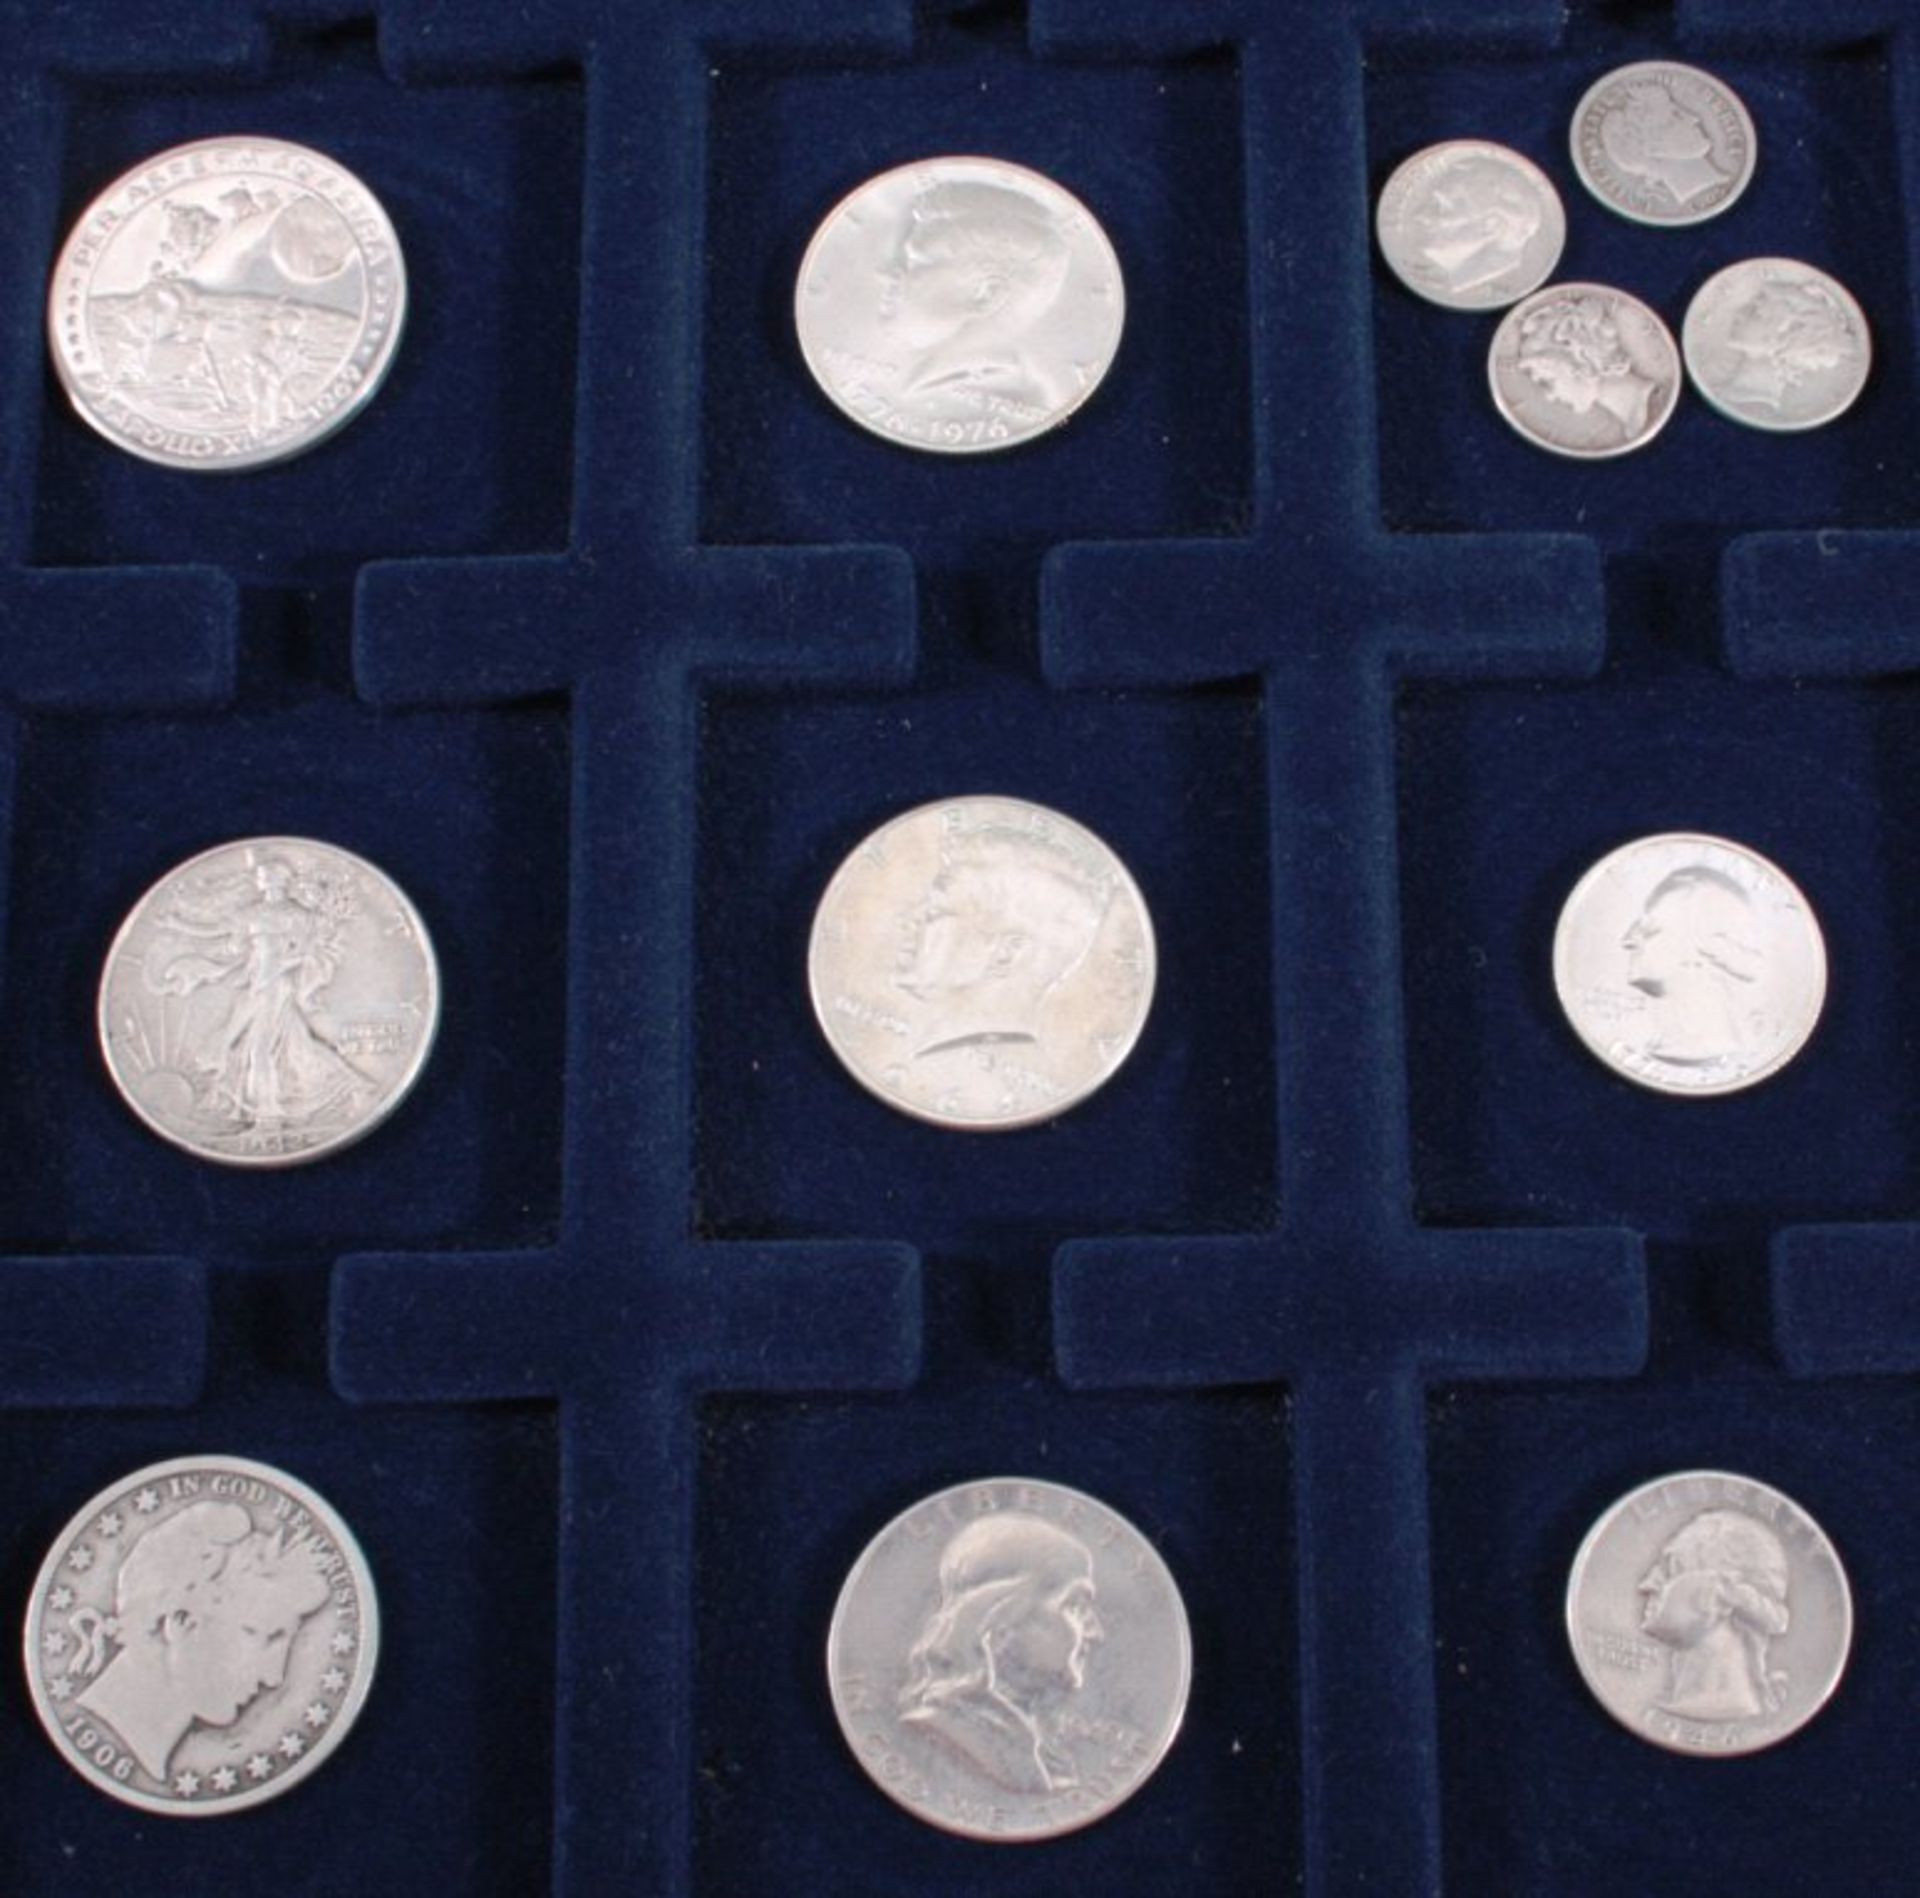 USA1x Medaille Apollo XI 1969.5x Half Dollar 1906, 42, 49, 64 und 76.2x Quarter Dollar 1946 und